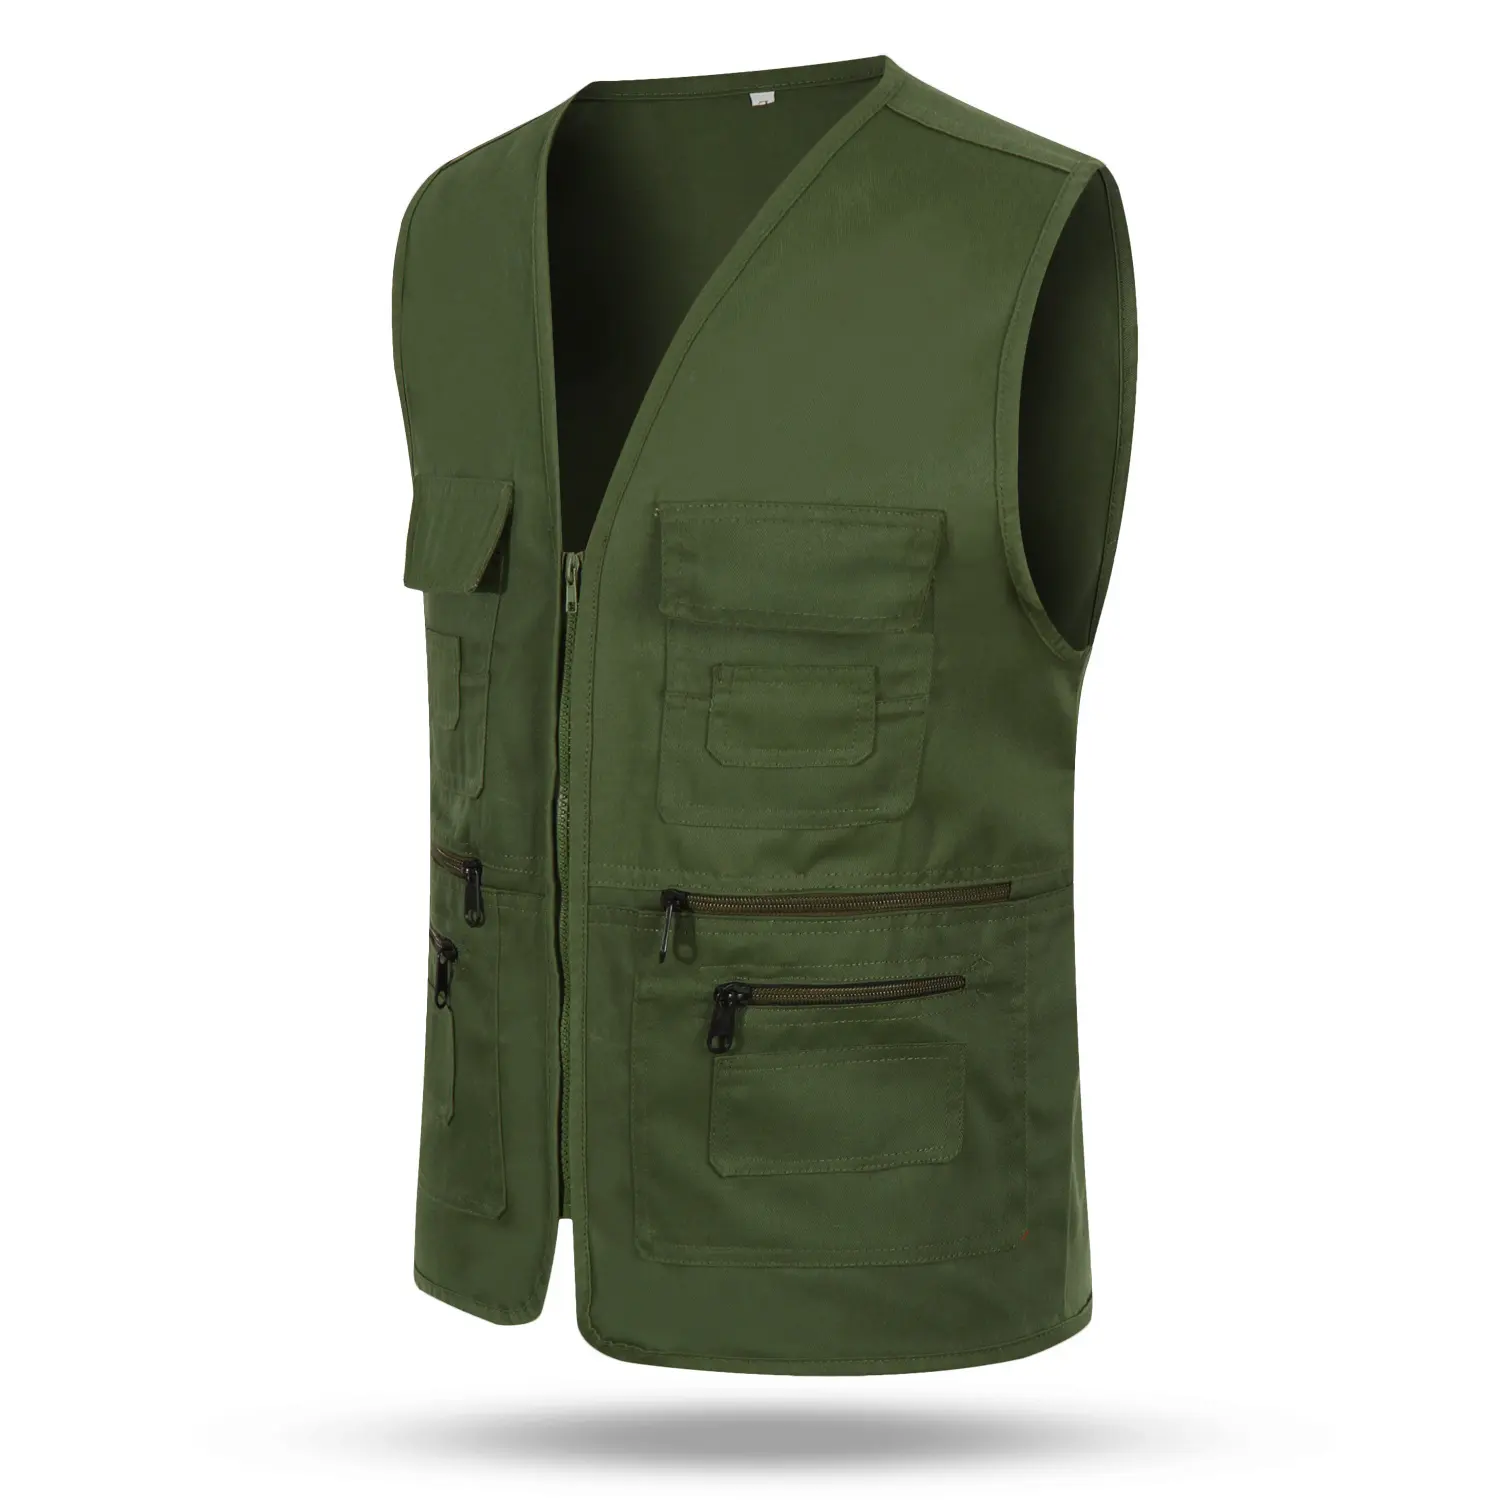 Professional multi pocket vest men's vests work tool vest custom logo